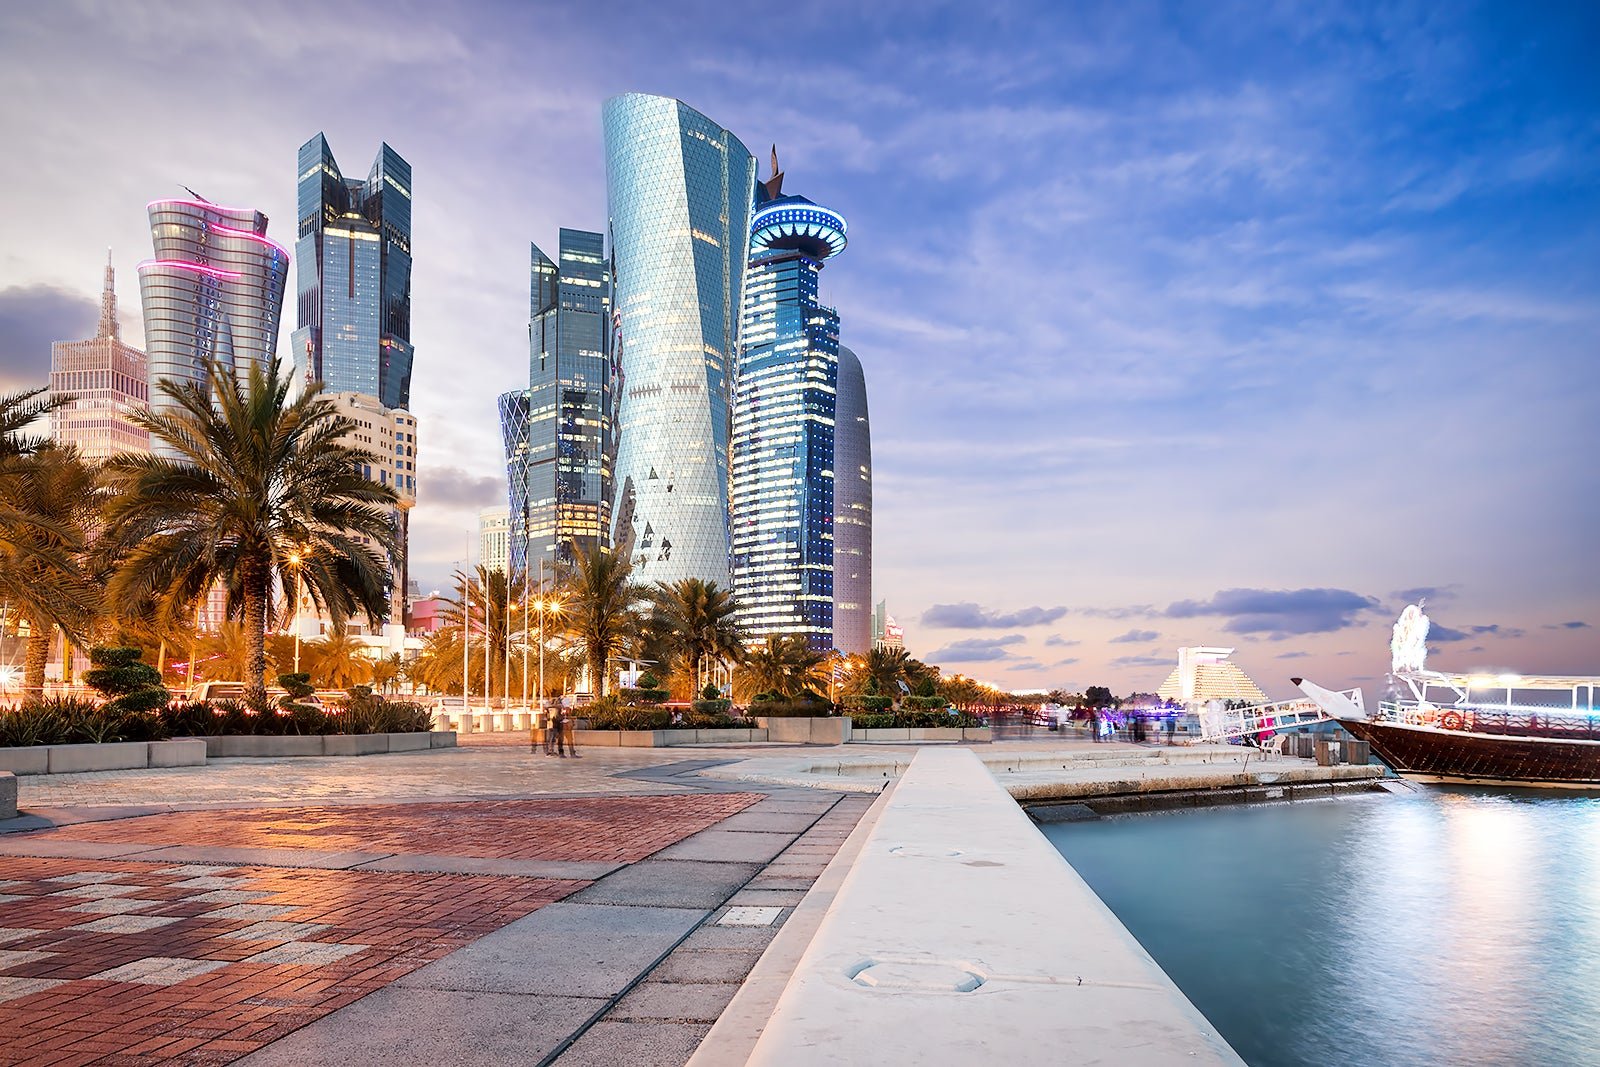 Viatge a Doha? Coneix la ciutat en un hotel 5* per poc més de 100€ per a dos